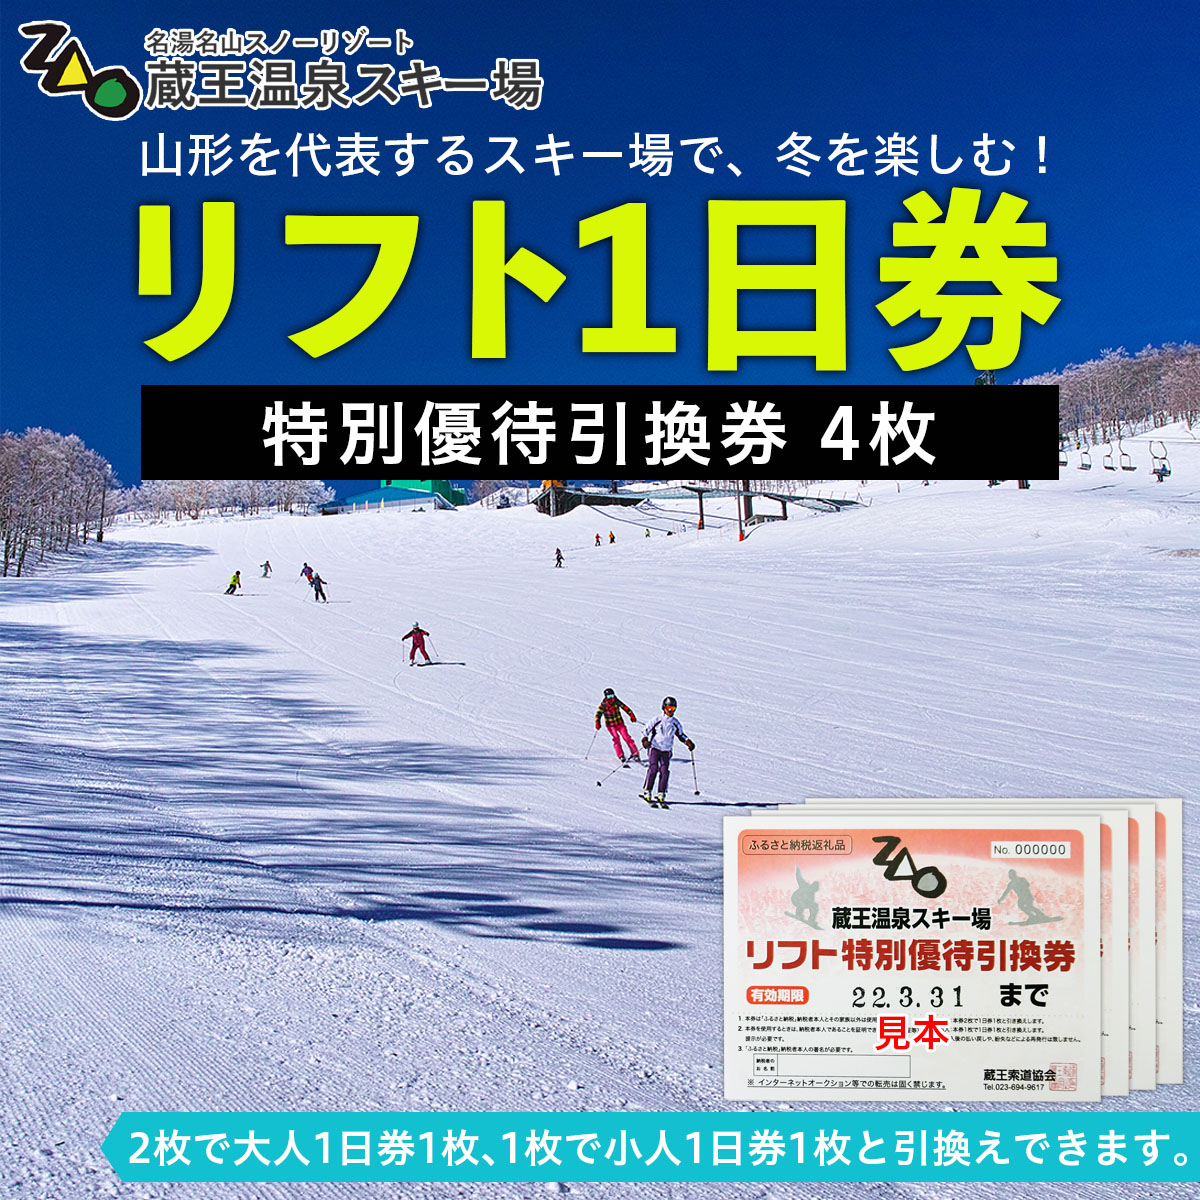 湯沢高原スキー場リフト券 2枚 - スキー場